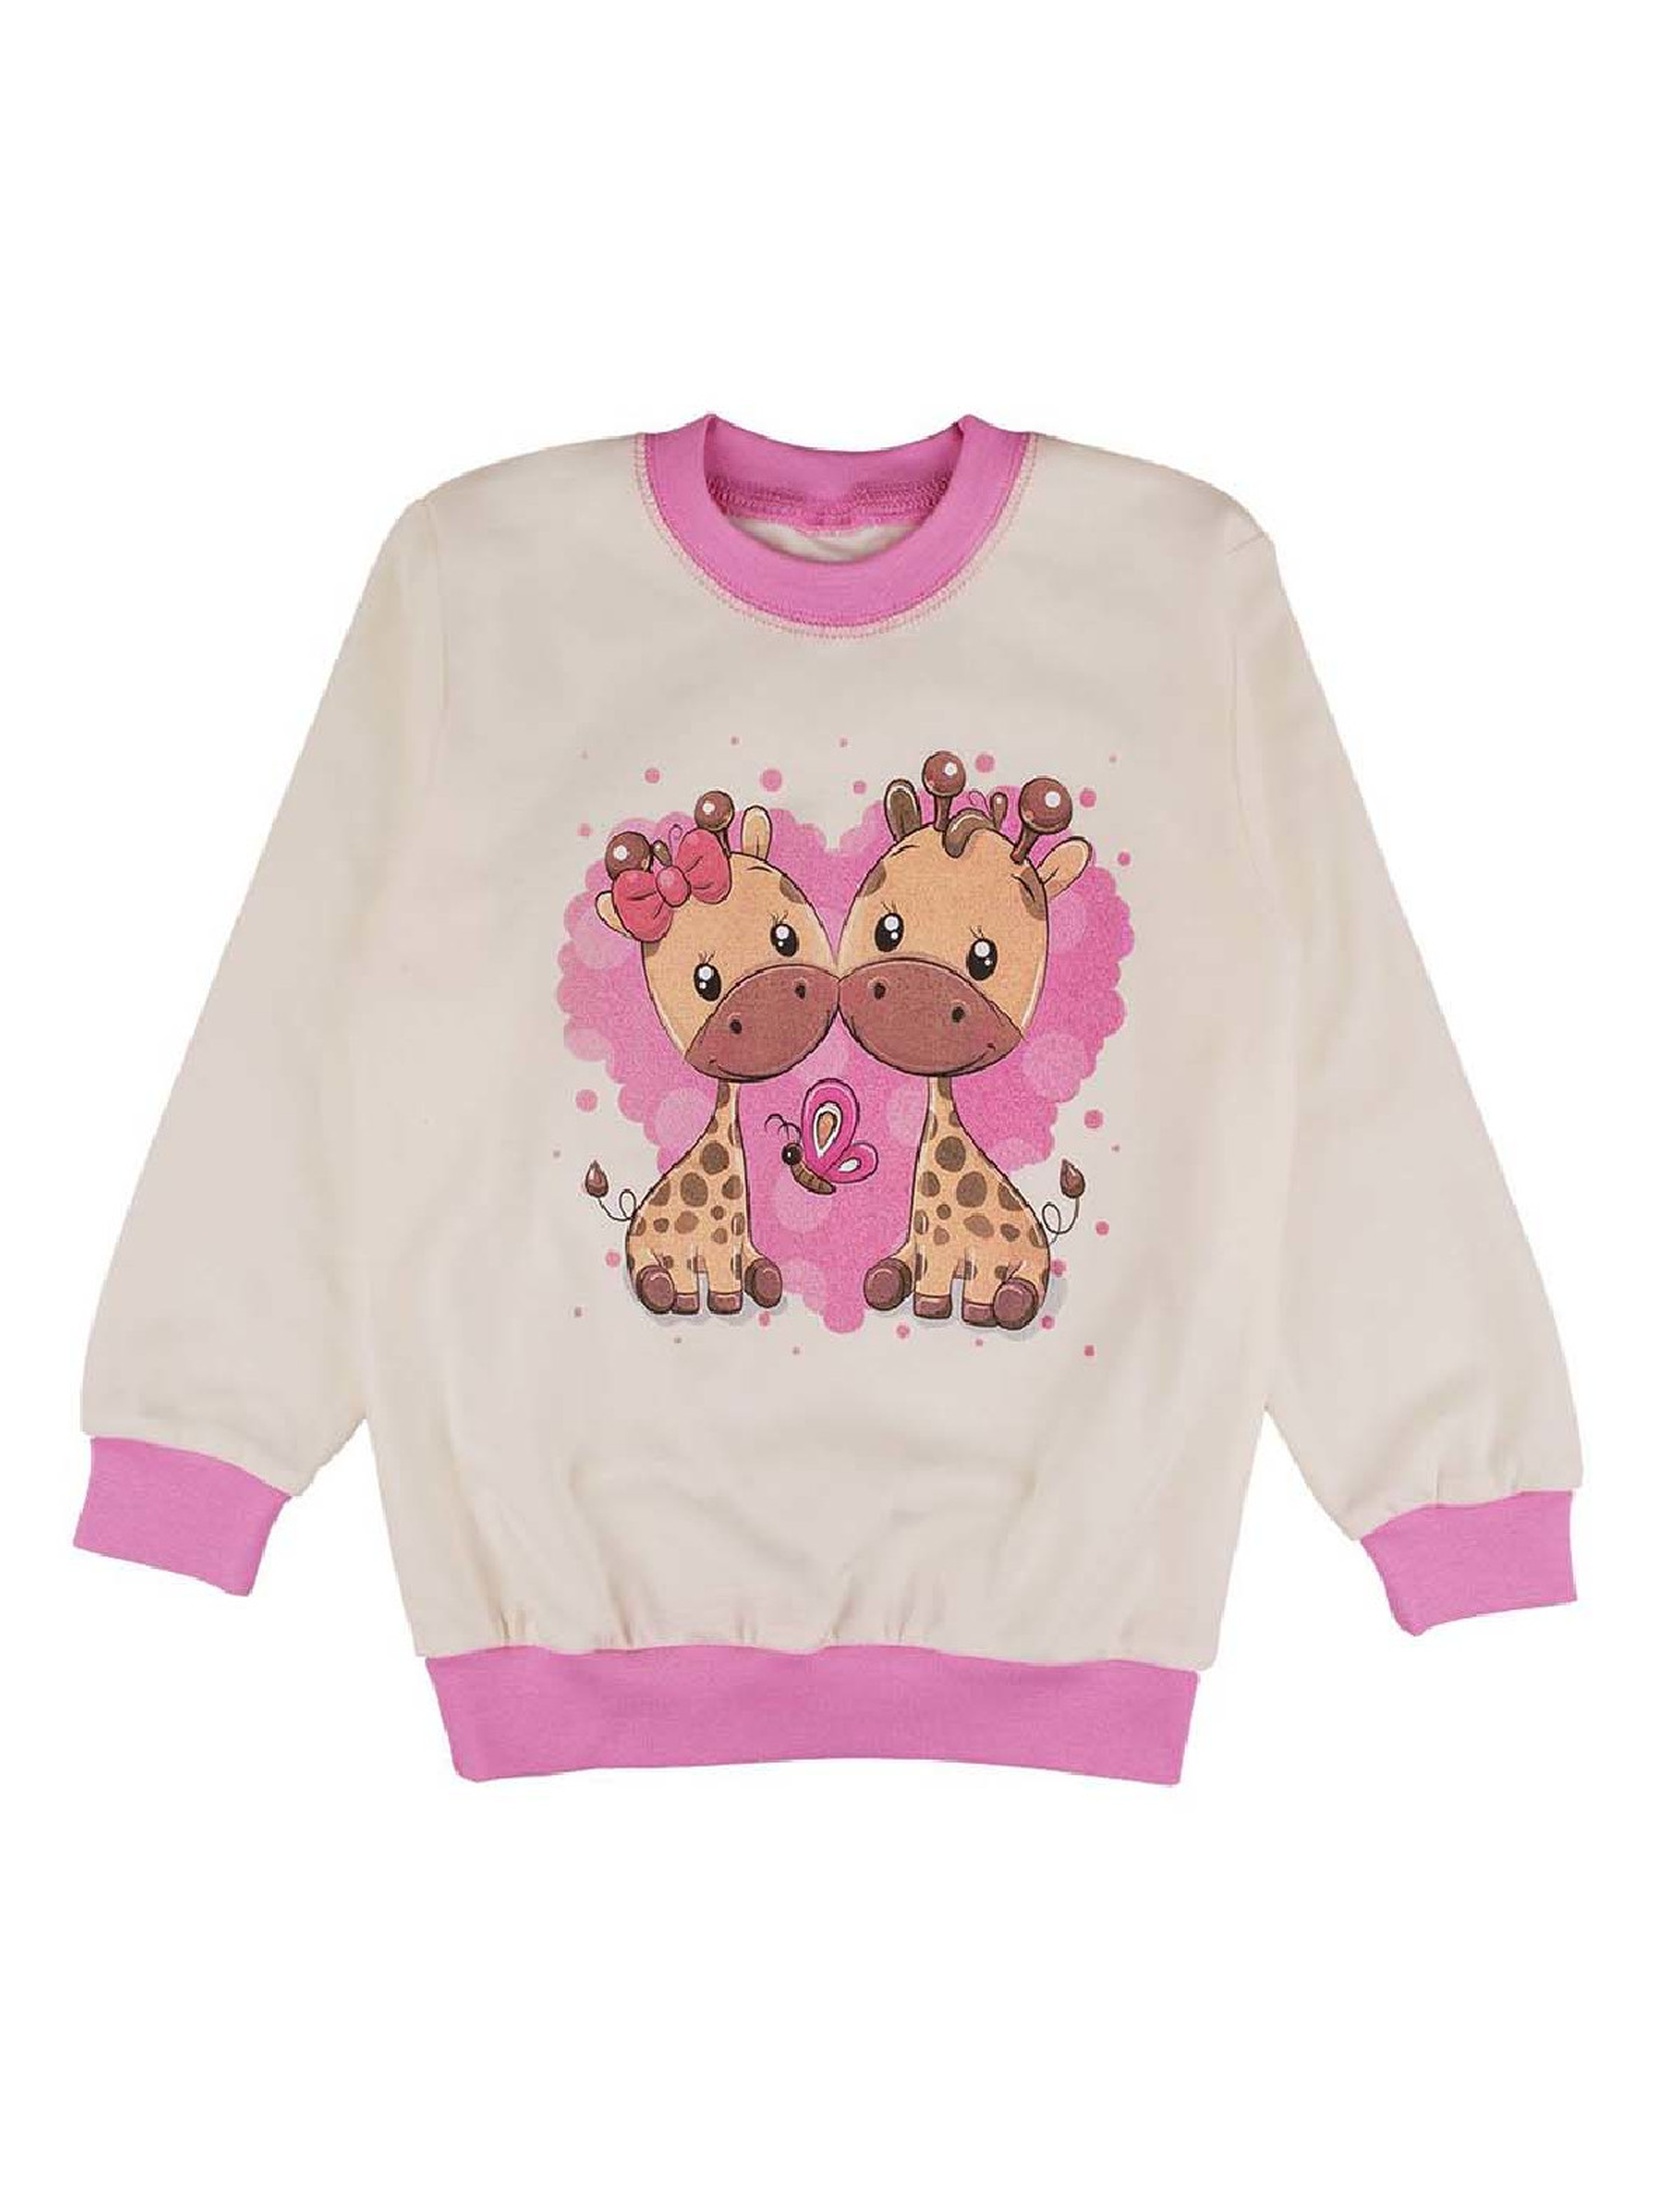 Ciepła dziewczęca piżama różowa Tup Tup- żyrafy